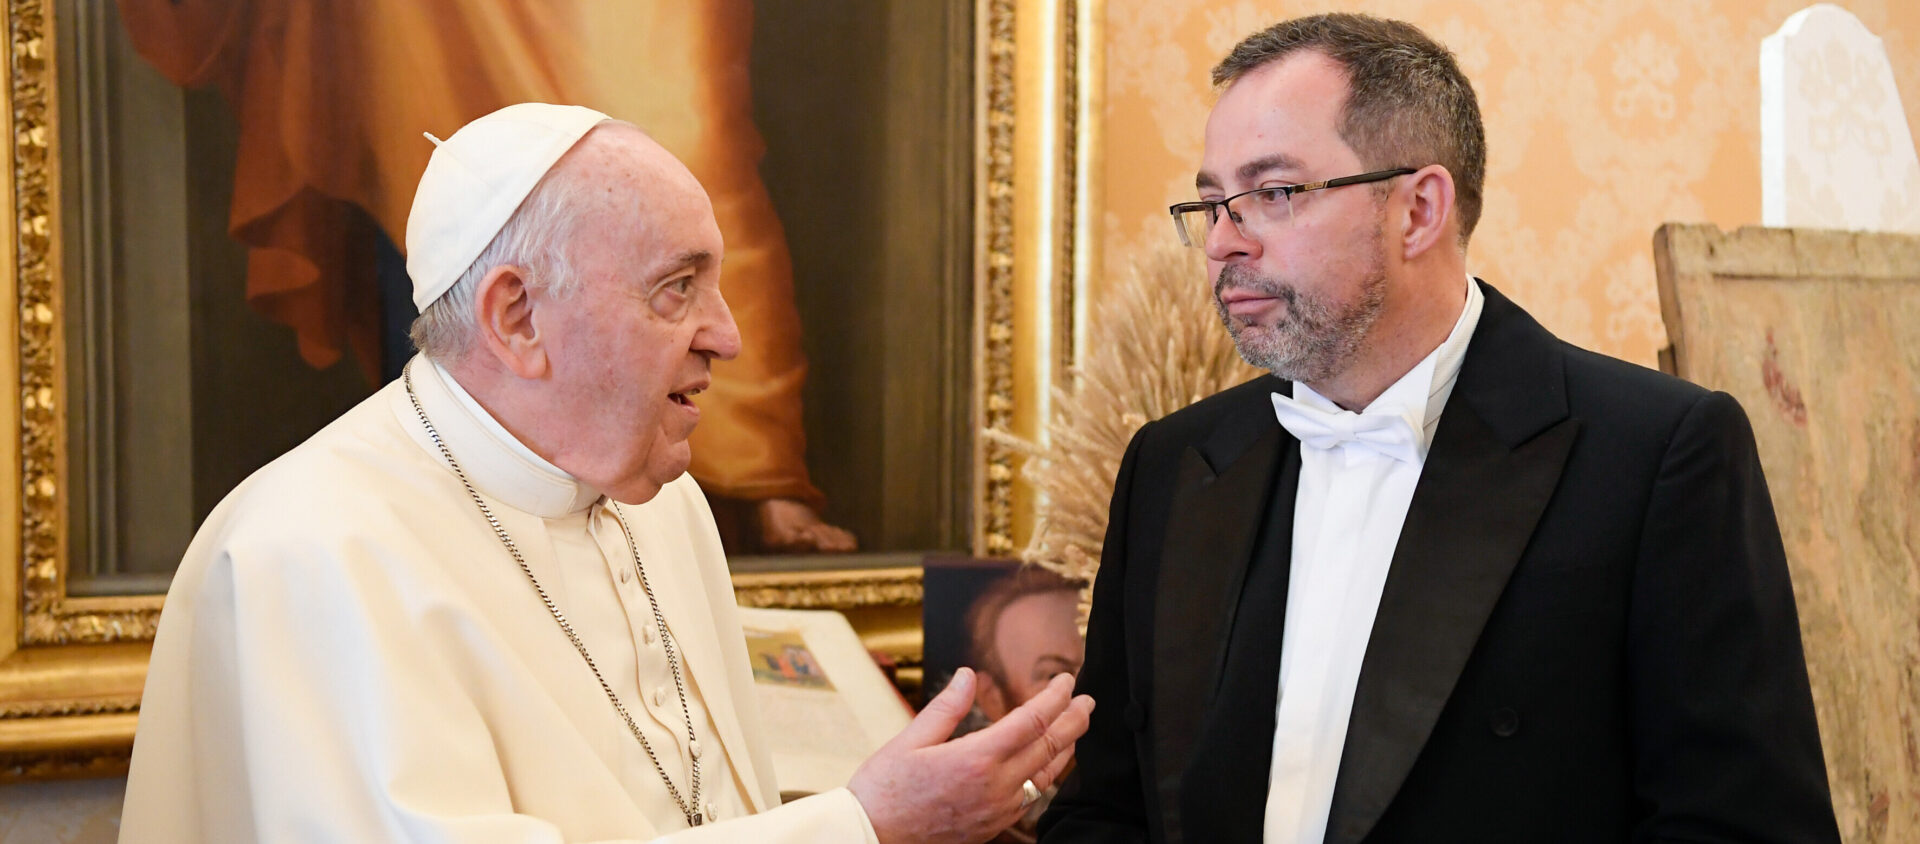 Andrij Jurasch, Botschafter der Ukraine beim Heiligen Stuhl, und Papst Franziskus am 7. April 2022 im Vatikan.